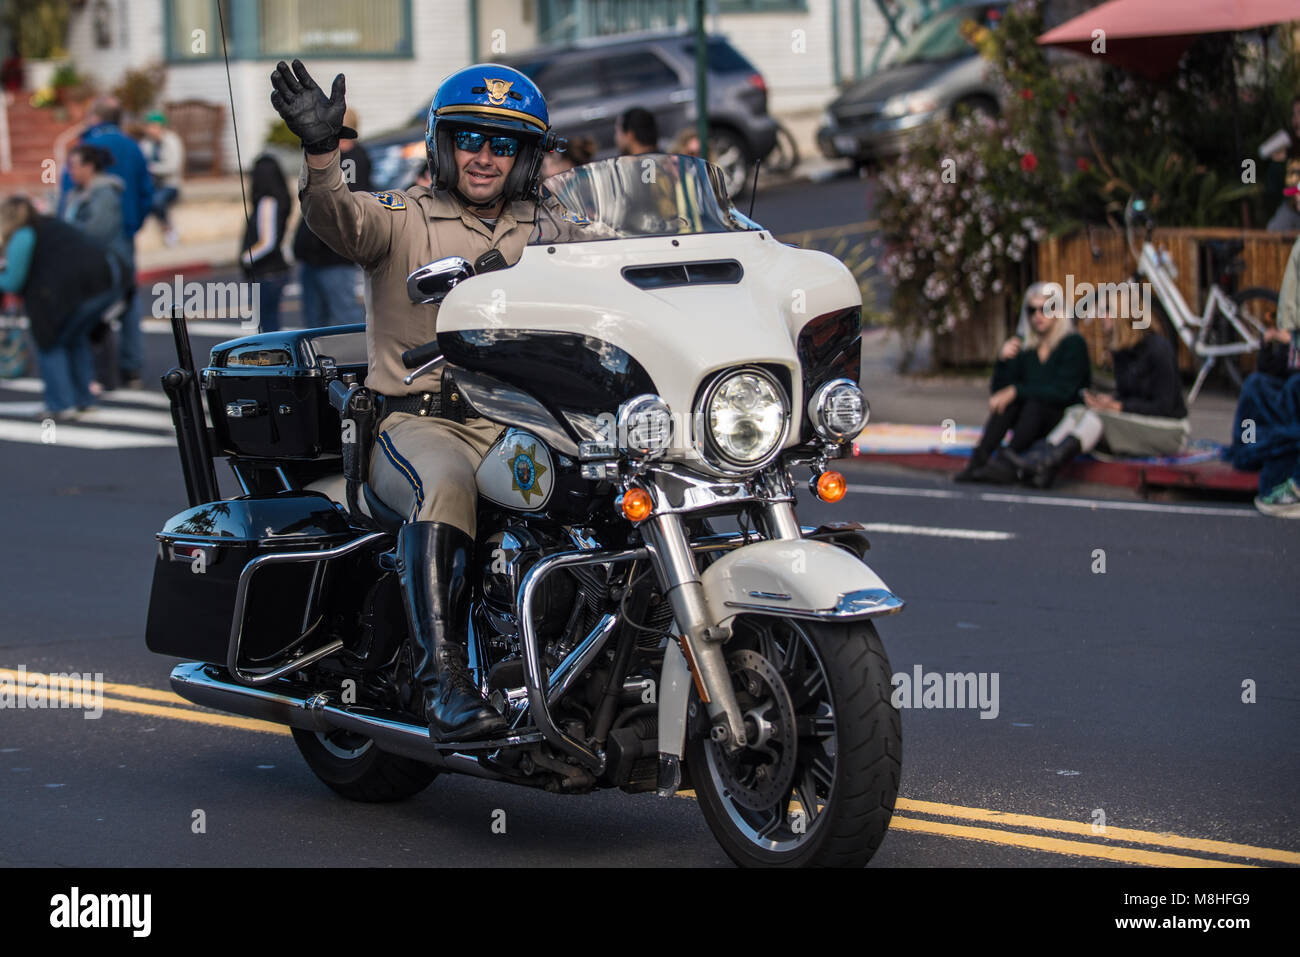 California Highway Patrol Officer auf Motorrad Wellen zu Gast während der jährlichen St. Patrick's Day Parade in Ventura, Kalifornien am 17. März 2018 in Un Stockfoto